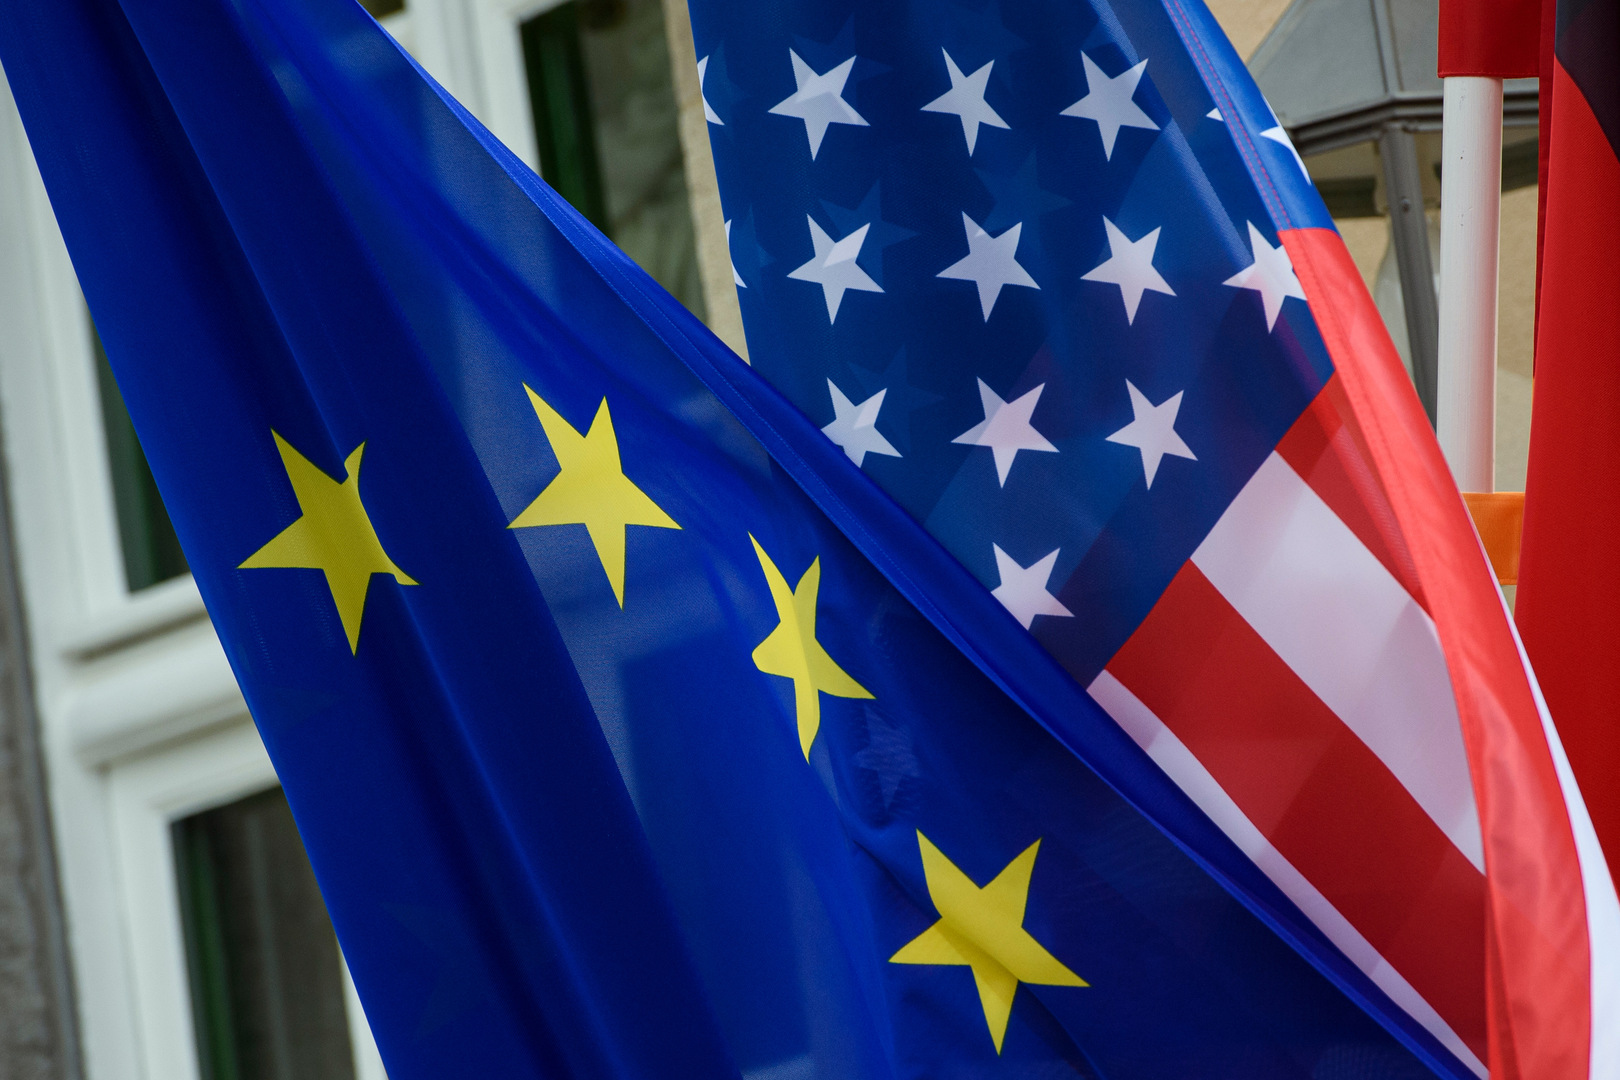 سكرتير مجلس الأمن الروسي يشير إلى توسع الولايات المتحدة في السوق الأوروبية